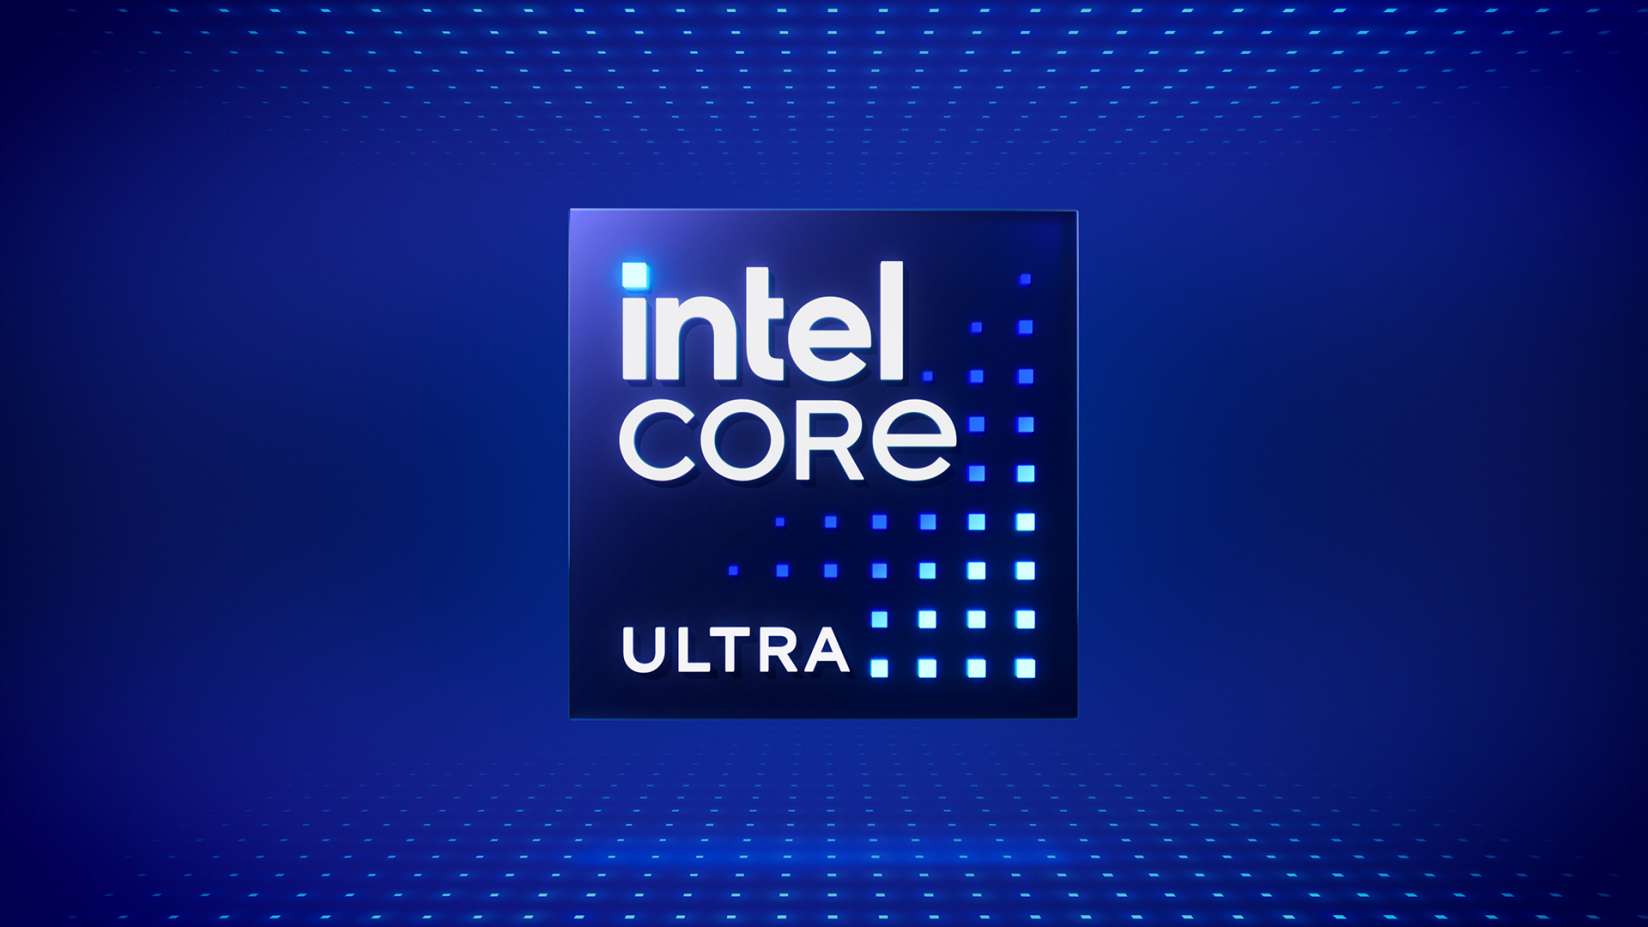 Intel Menghentikan Penggunaan Jenama “i” Pada Cip Pemprosesan, Menambah Keluarga “Intel Core Ultra”